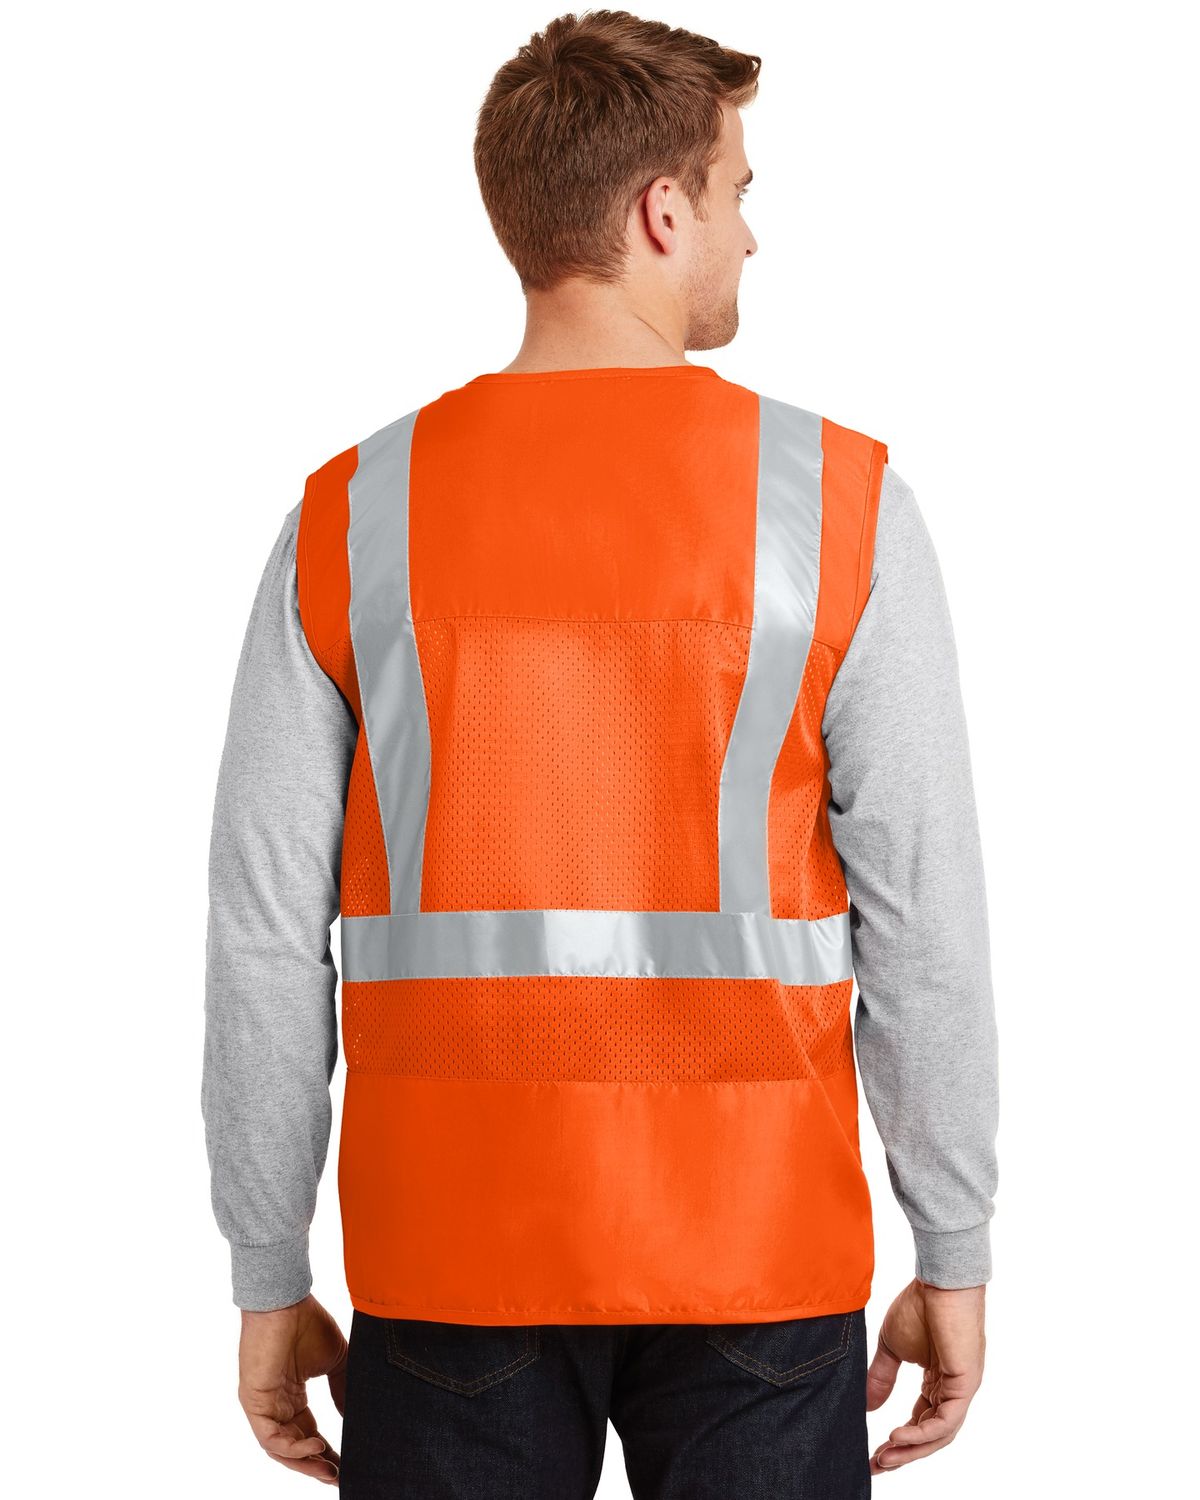 'Cornerstone CSV405 ANSI Class 2 Safety Pocket Vest'